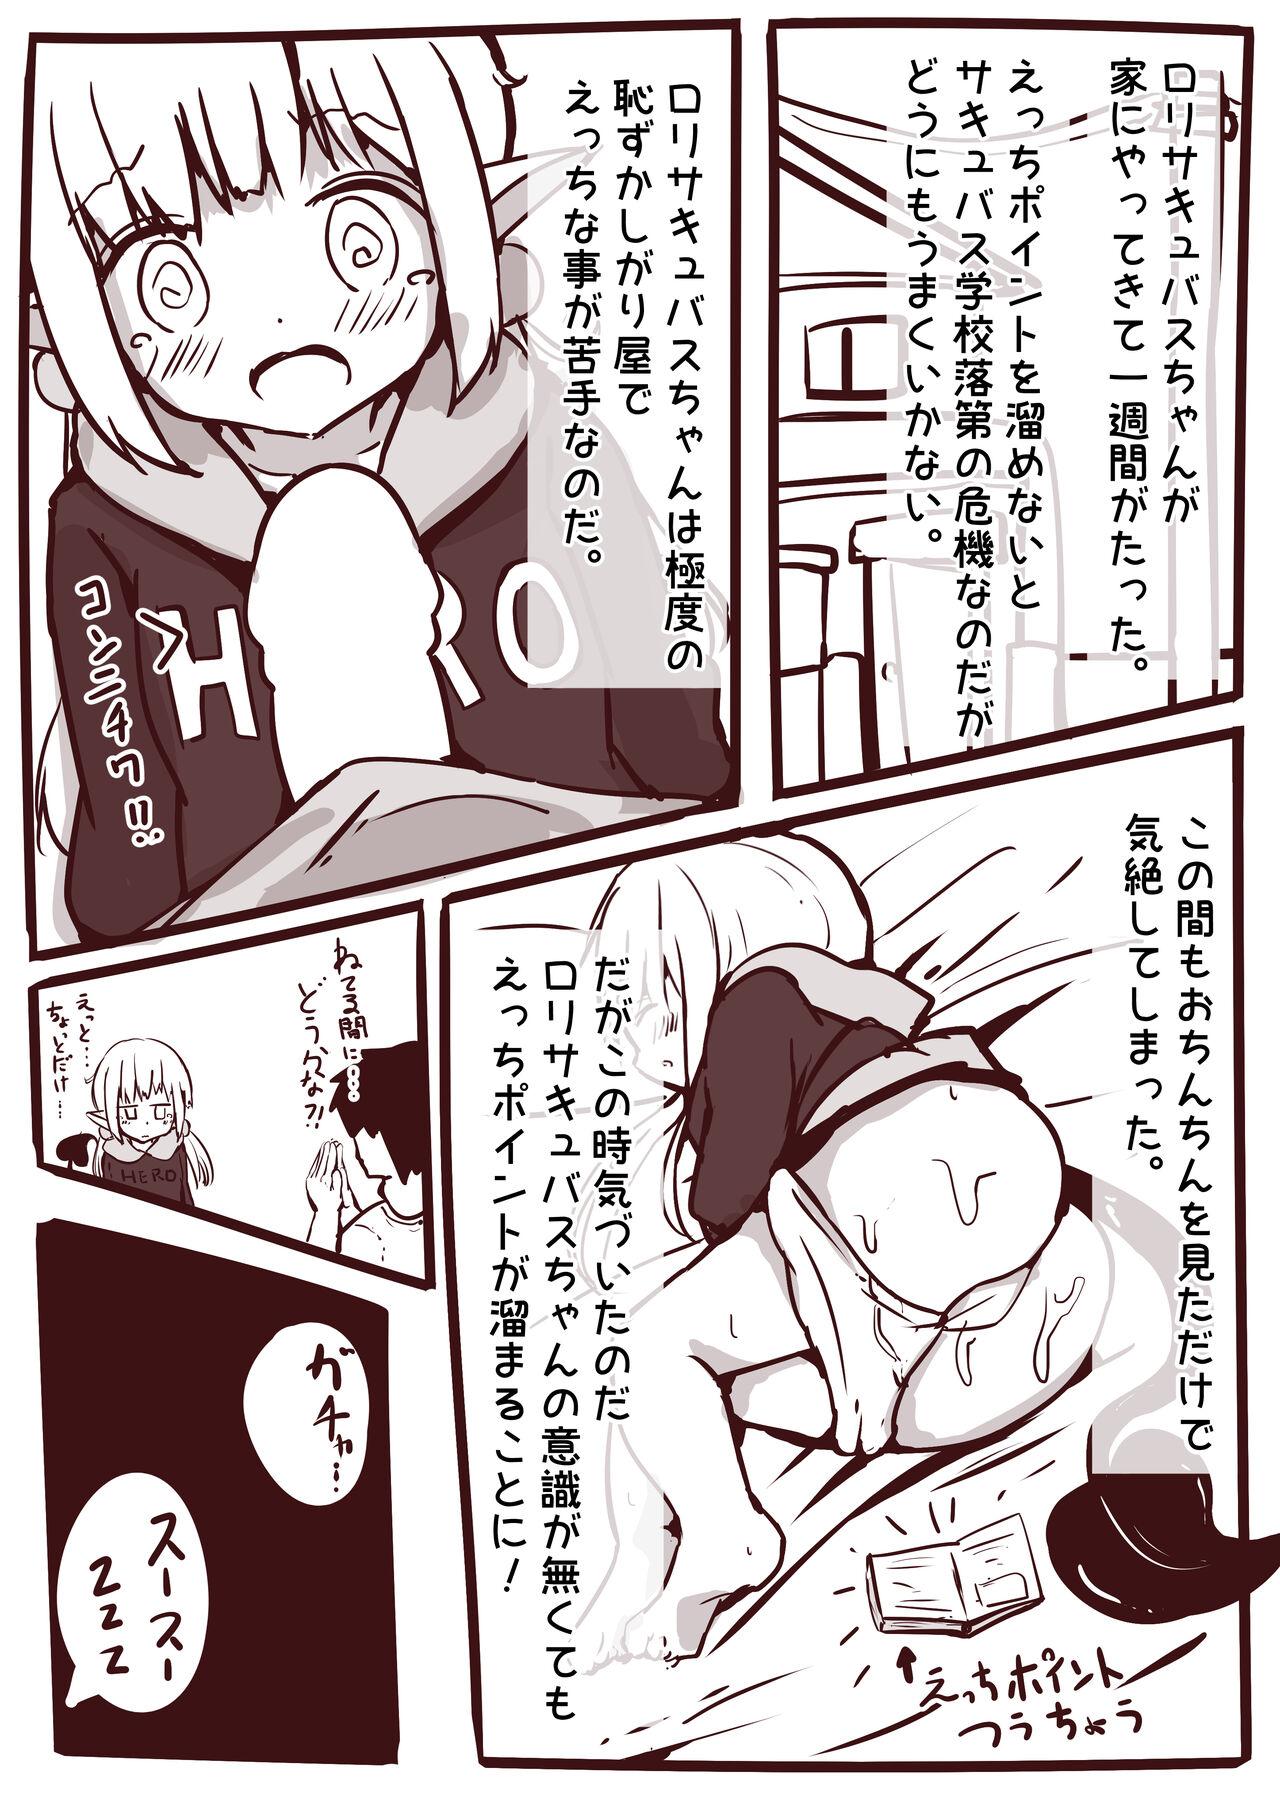 [Motiyuki] Ecchi na Koto ga Nigate na Loli Succubus-chan Manga 1-3 8